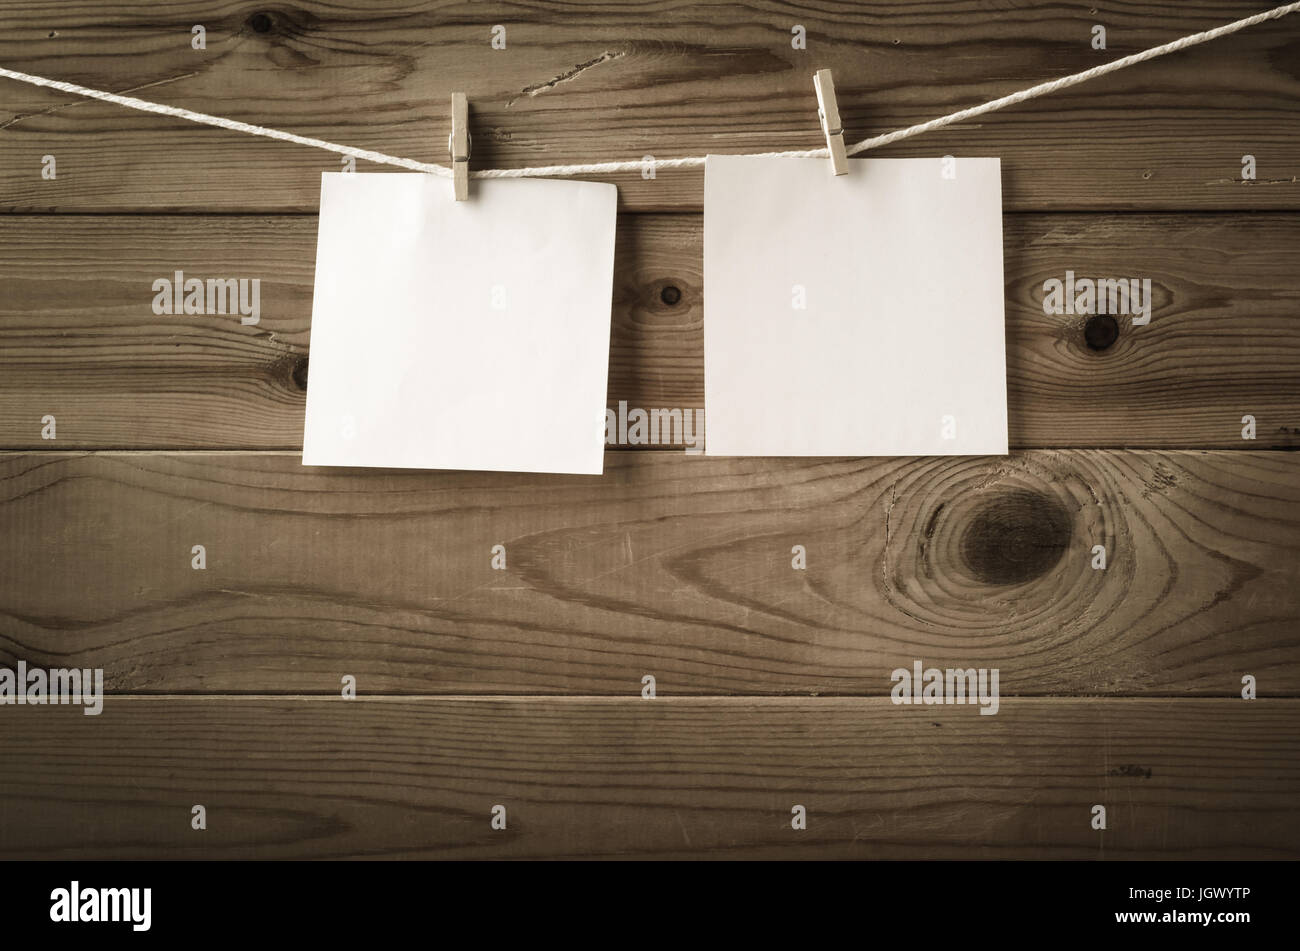 Zwei Quadrate von leeres Papier, gekoppelt an eine Zeichenfolge, die Wäscheleine mit Holzbrett Zaun im Hintergrund.  Niedrige Sättigung und Vignette gibt ein Retro oder vi Stockfoto